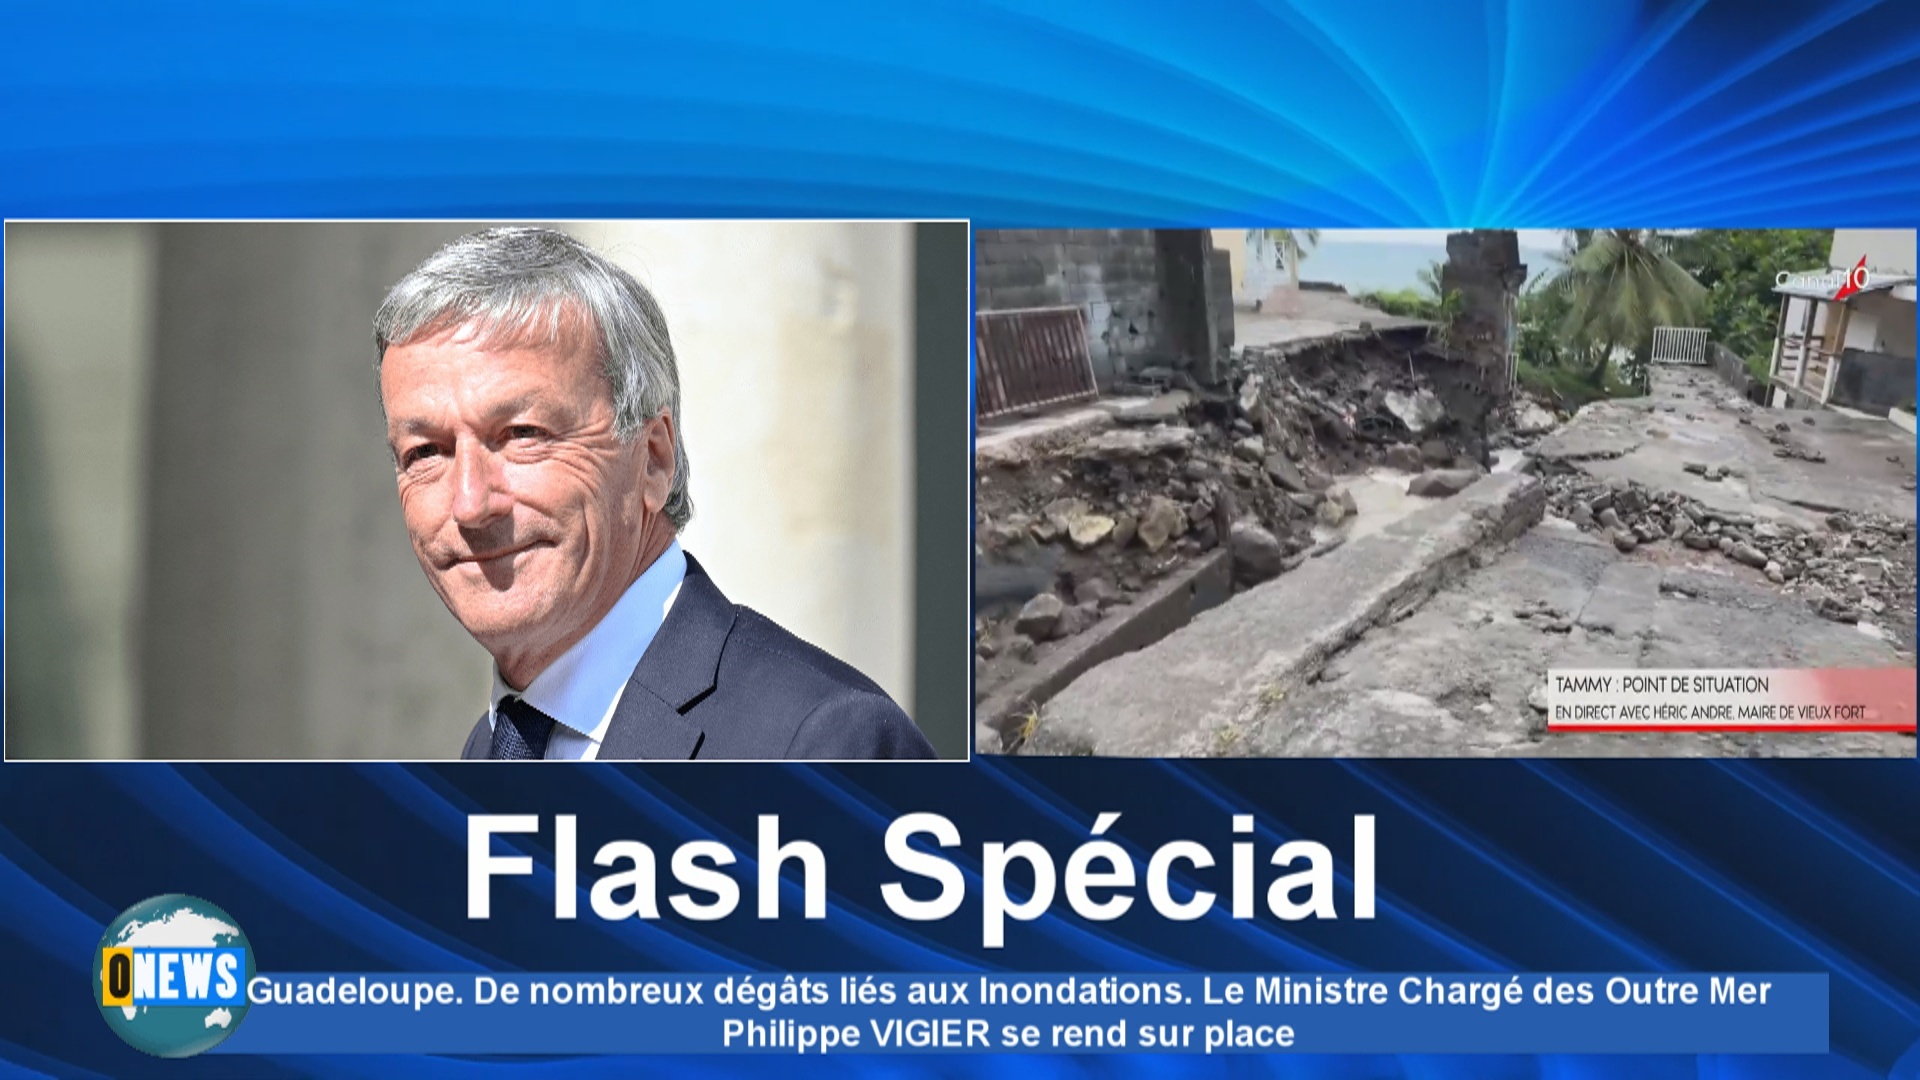 Guadeloupe. De nombreux dégâts liés aux Inondations. Le Ministre Chargé des Outre Mer Philippe VIGIER se rend sur place